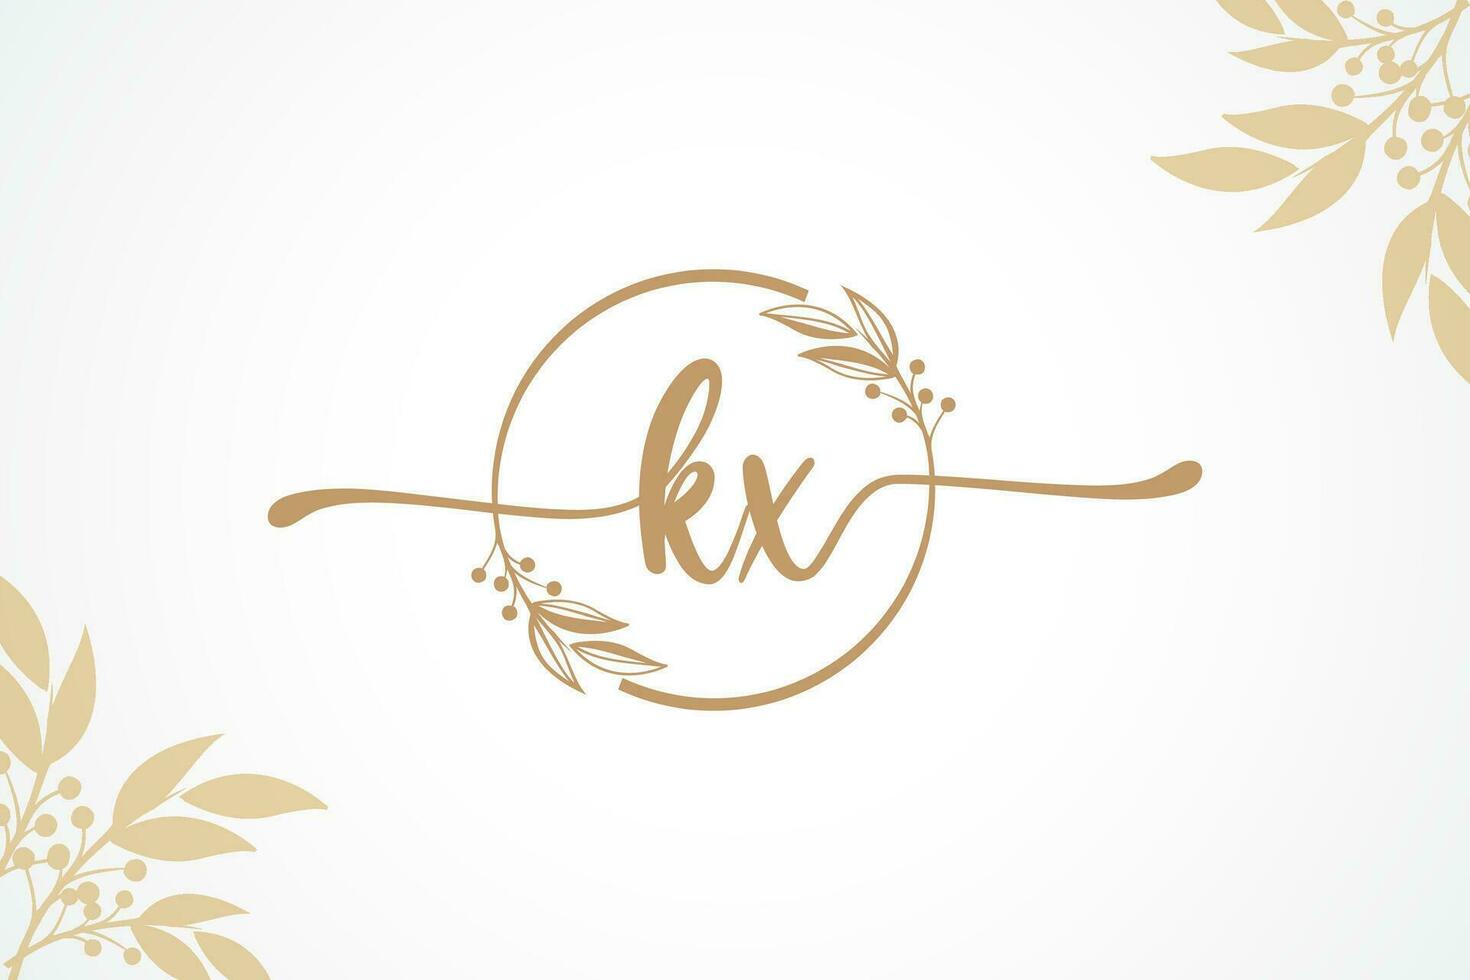 lujo oro firma inicial kx logo diseño aislado hoja y flor vector